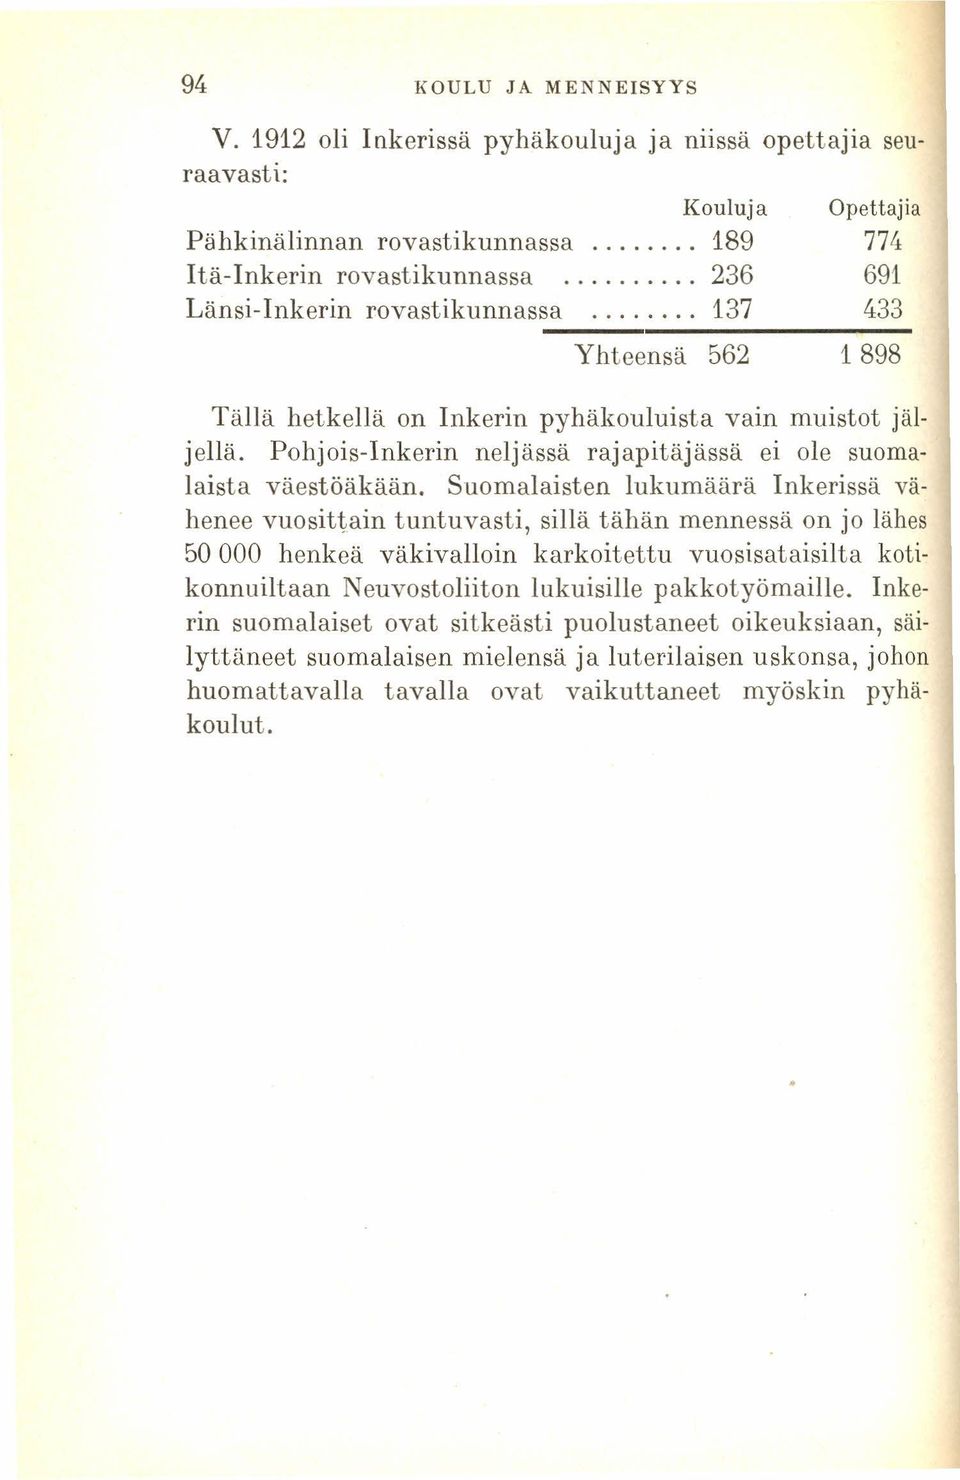 Opettajia 774 691 433 1898 Tällä hetkellä on Inkerin pyhäkouluista vain muistot jäljellä. Pohjois-Inkerin neljässä rajapitäjässä ei ole suomalaista väestöäkään.